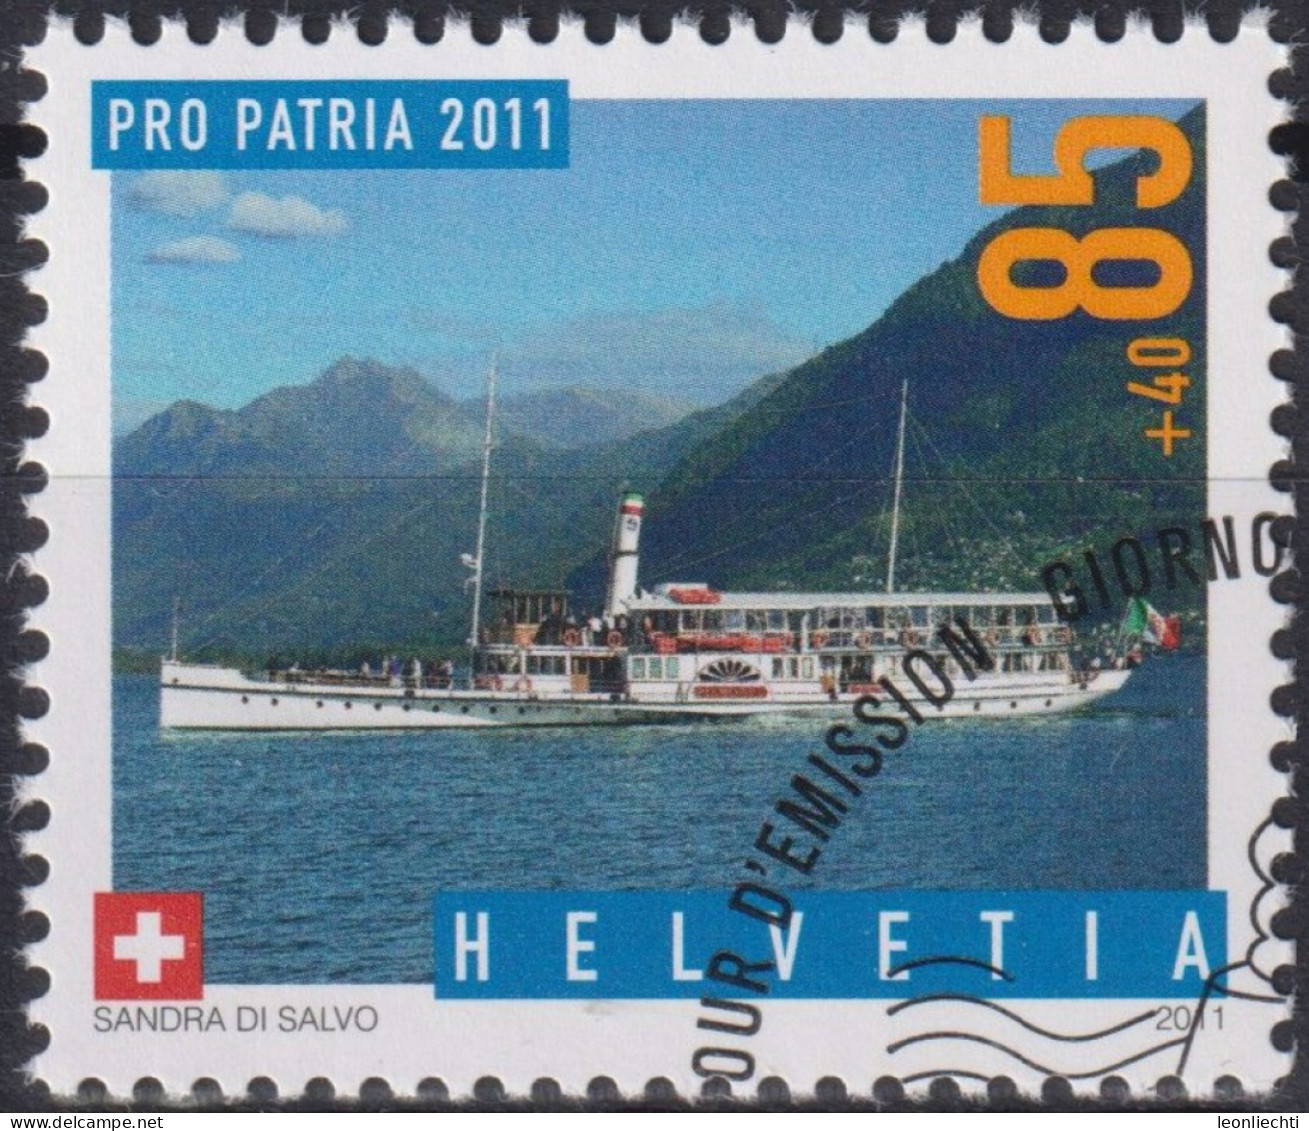 2011 Schweiz Pro Patria, Dampfschiff, Piemonte ⵙ Zum:CH B313, Mi:CH 2204, Yt:CH 2125 - Usati